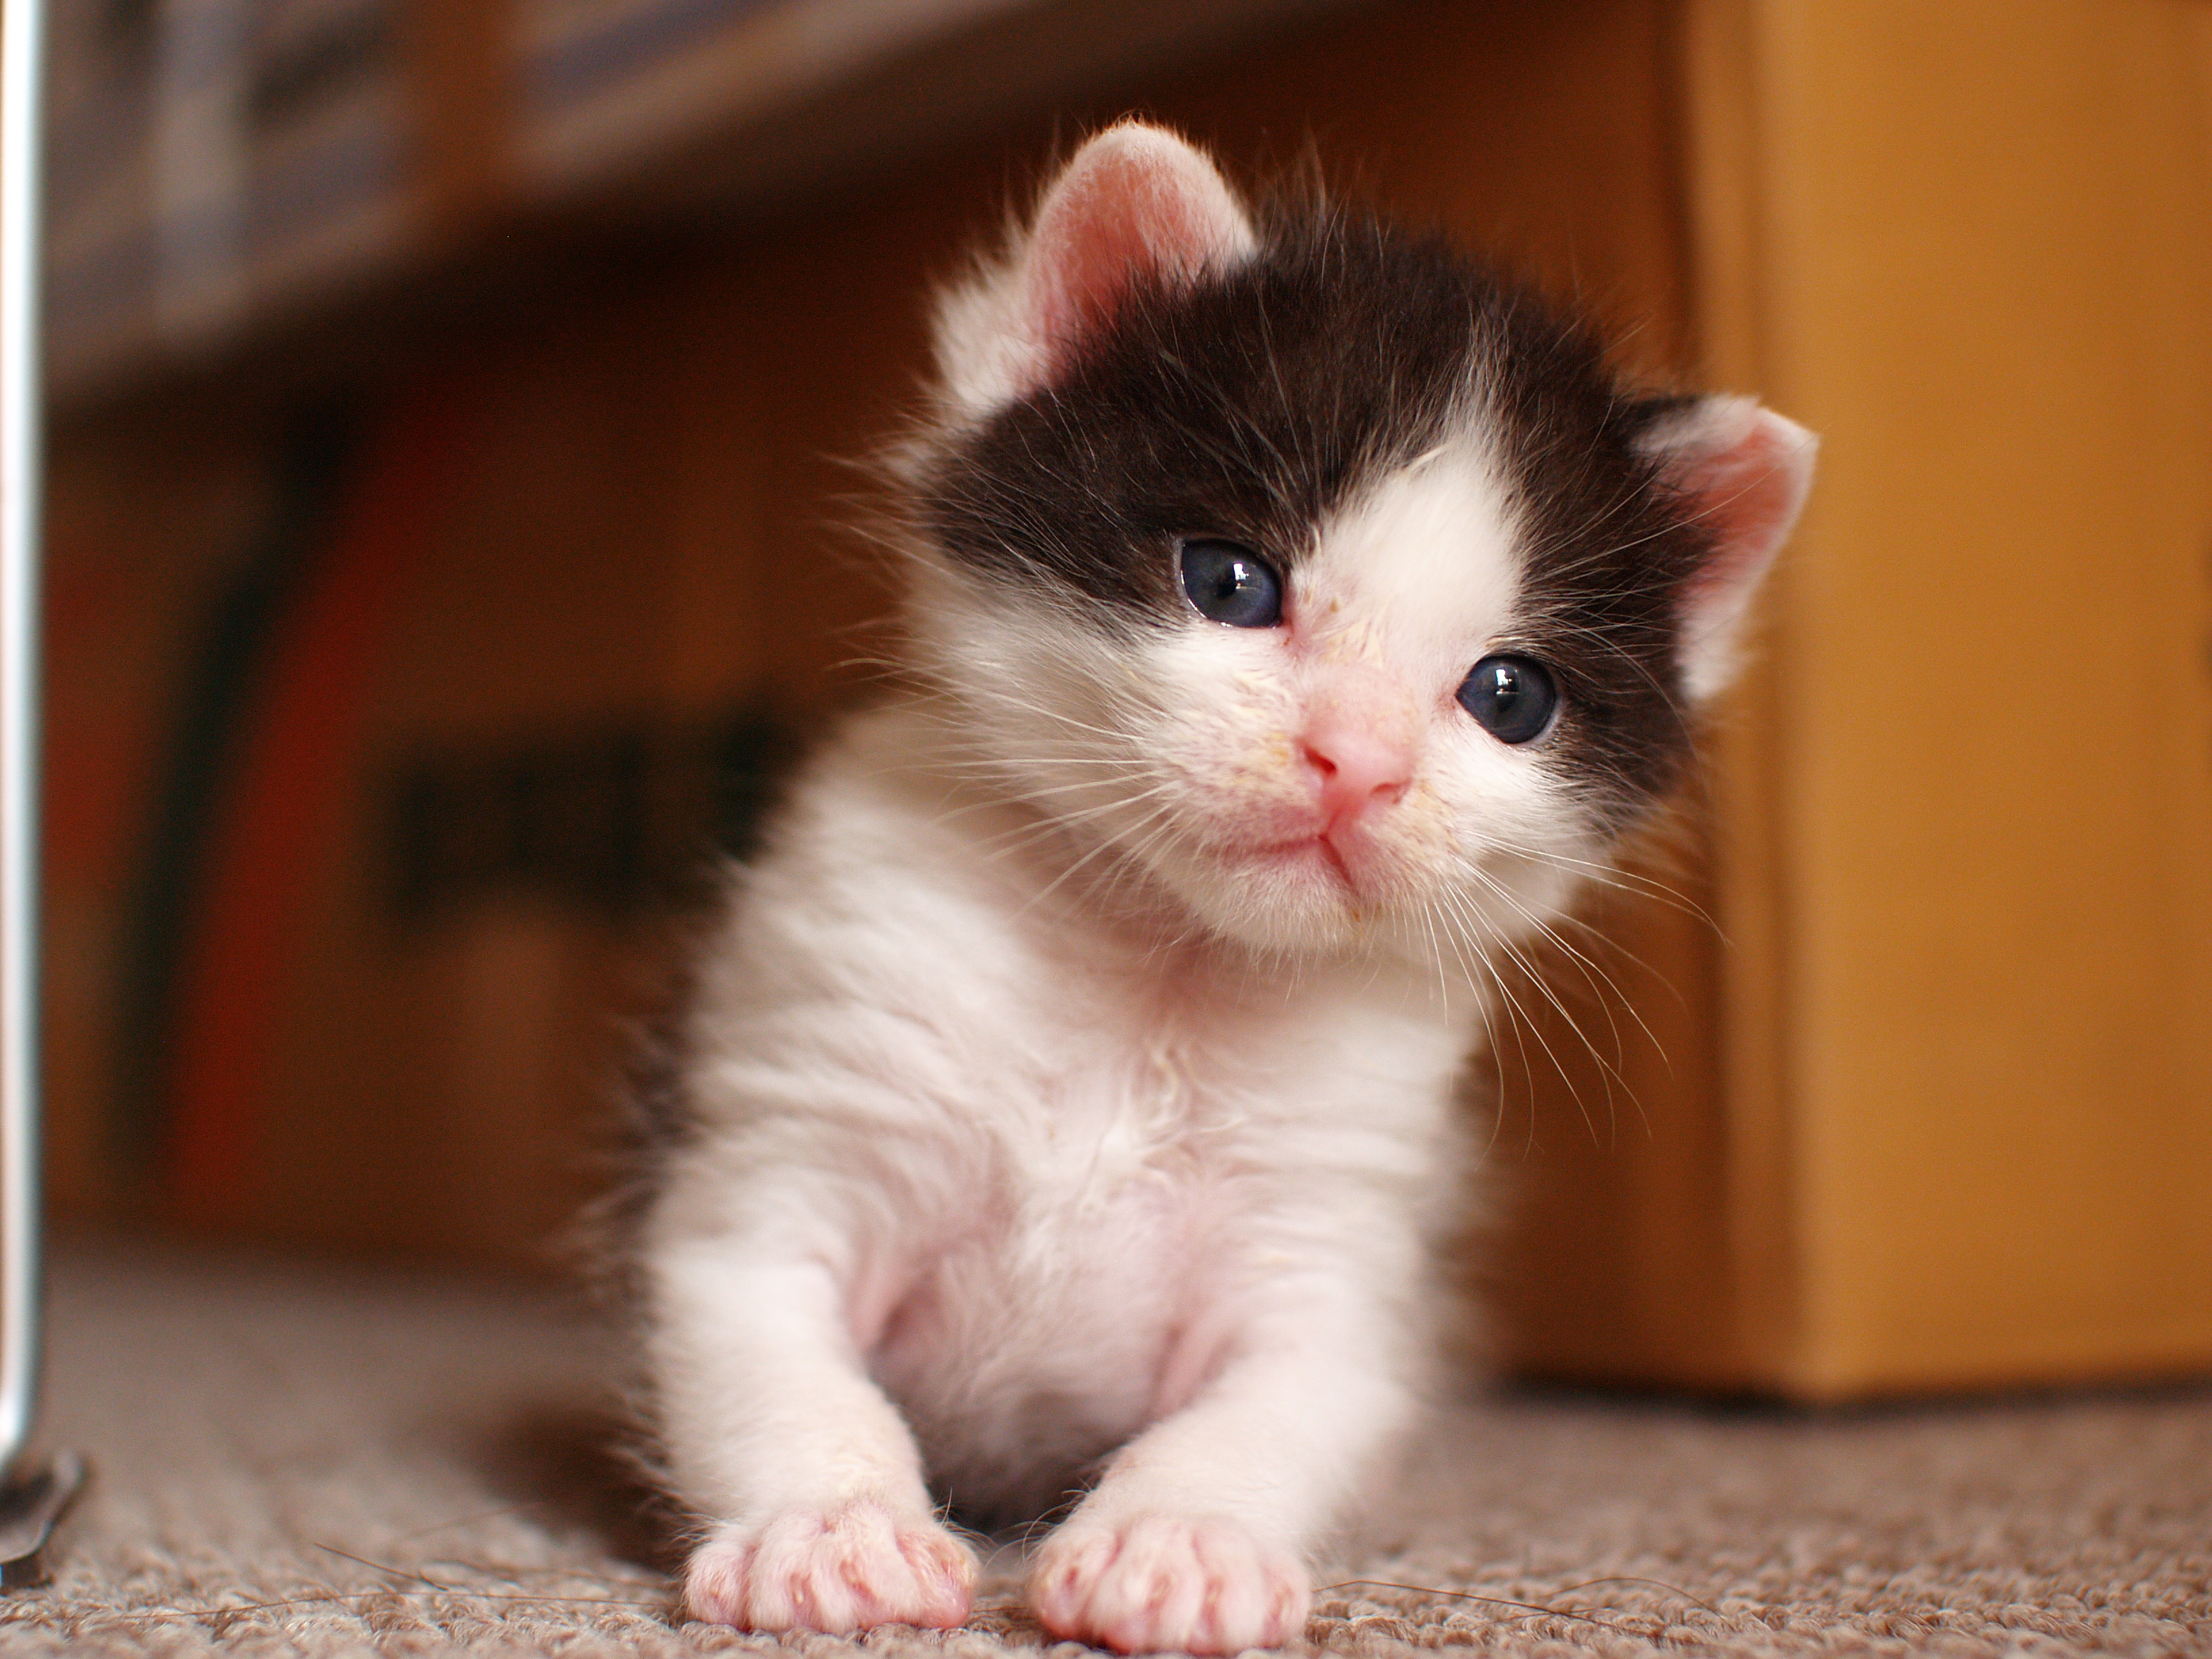 フリー画像 動物写真 哺乳類 ネコ科 猫 ネコ 子猫 赤ちゃん 動物 画像素材なら 無料 フリー写真素材のフリーフォト